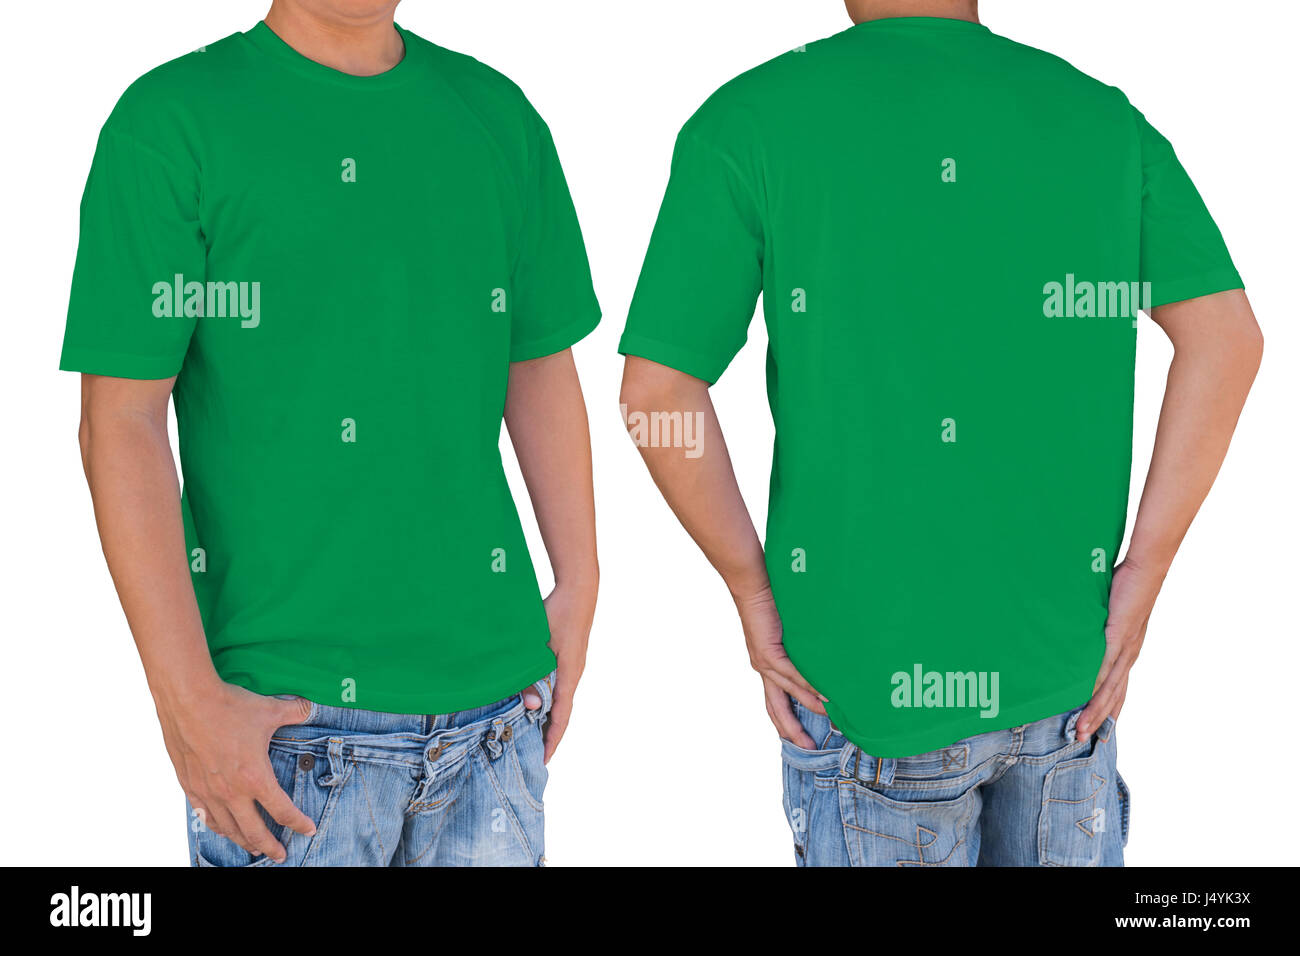 Hombre vestido con camiseta verde en blanco con trazado de recorte, vista frontal y posterior. Plantilla para insertar logo, patrón o ilustraciones. Foto de stock